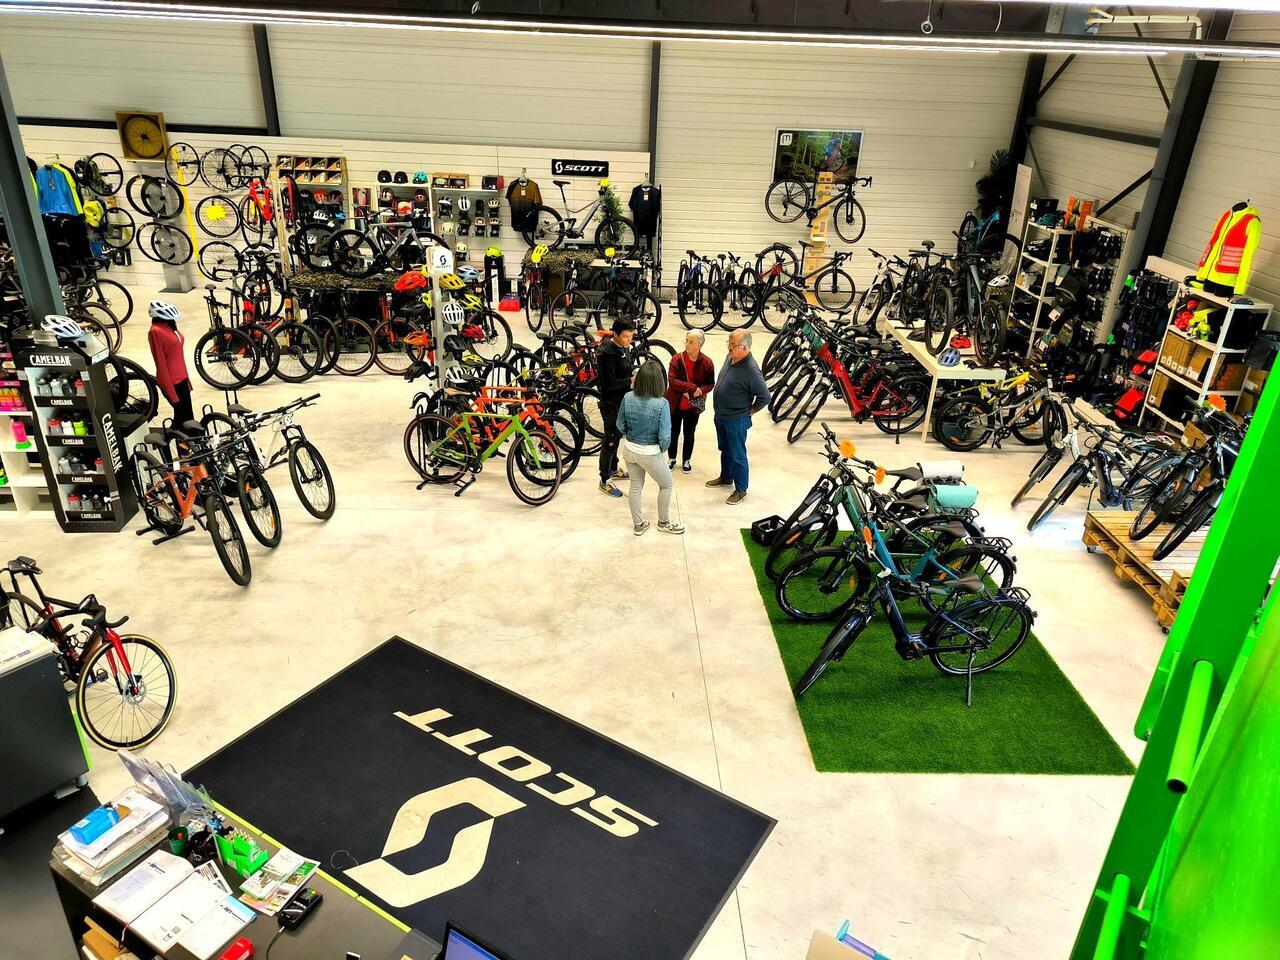 Action Vélo magasin de vélo à Saintes Magasin Veloland Saintes